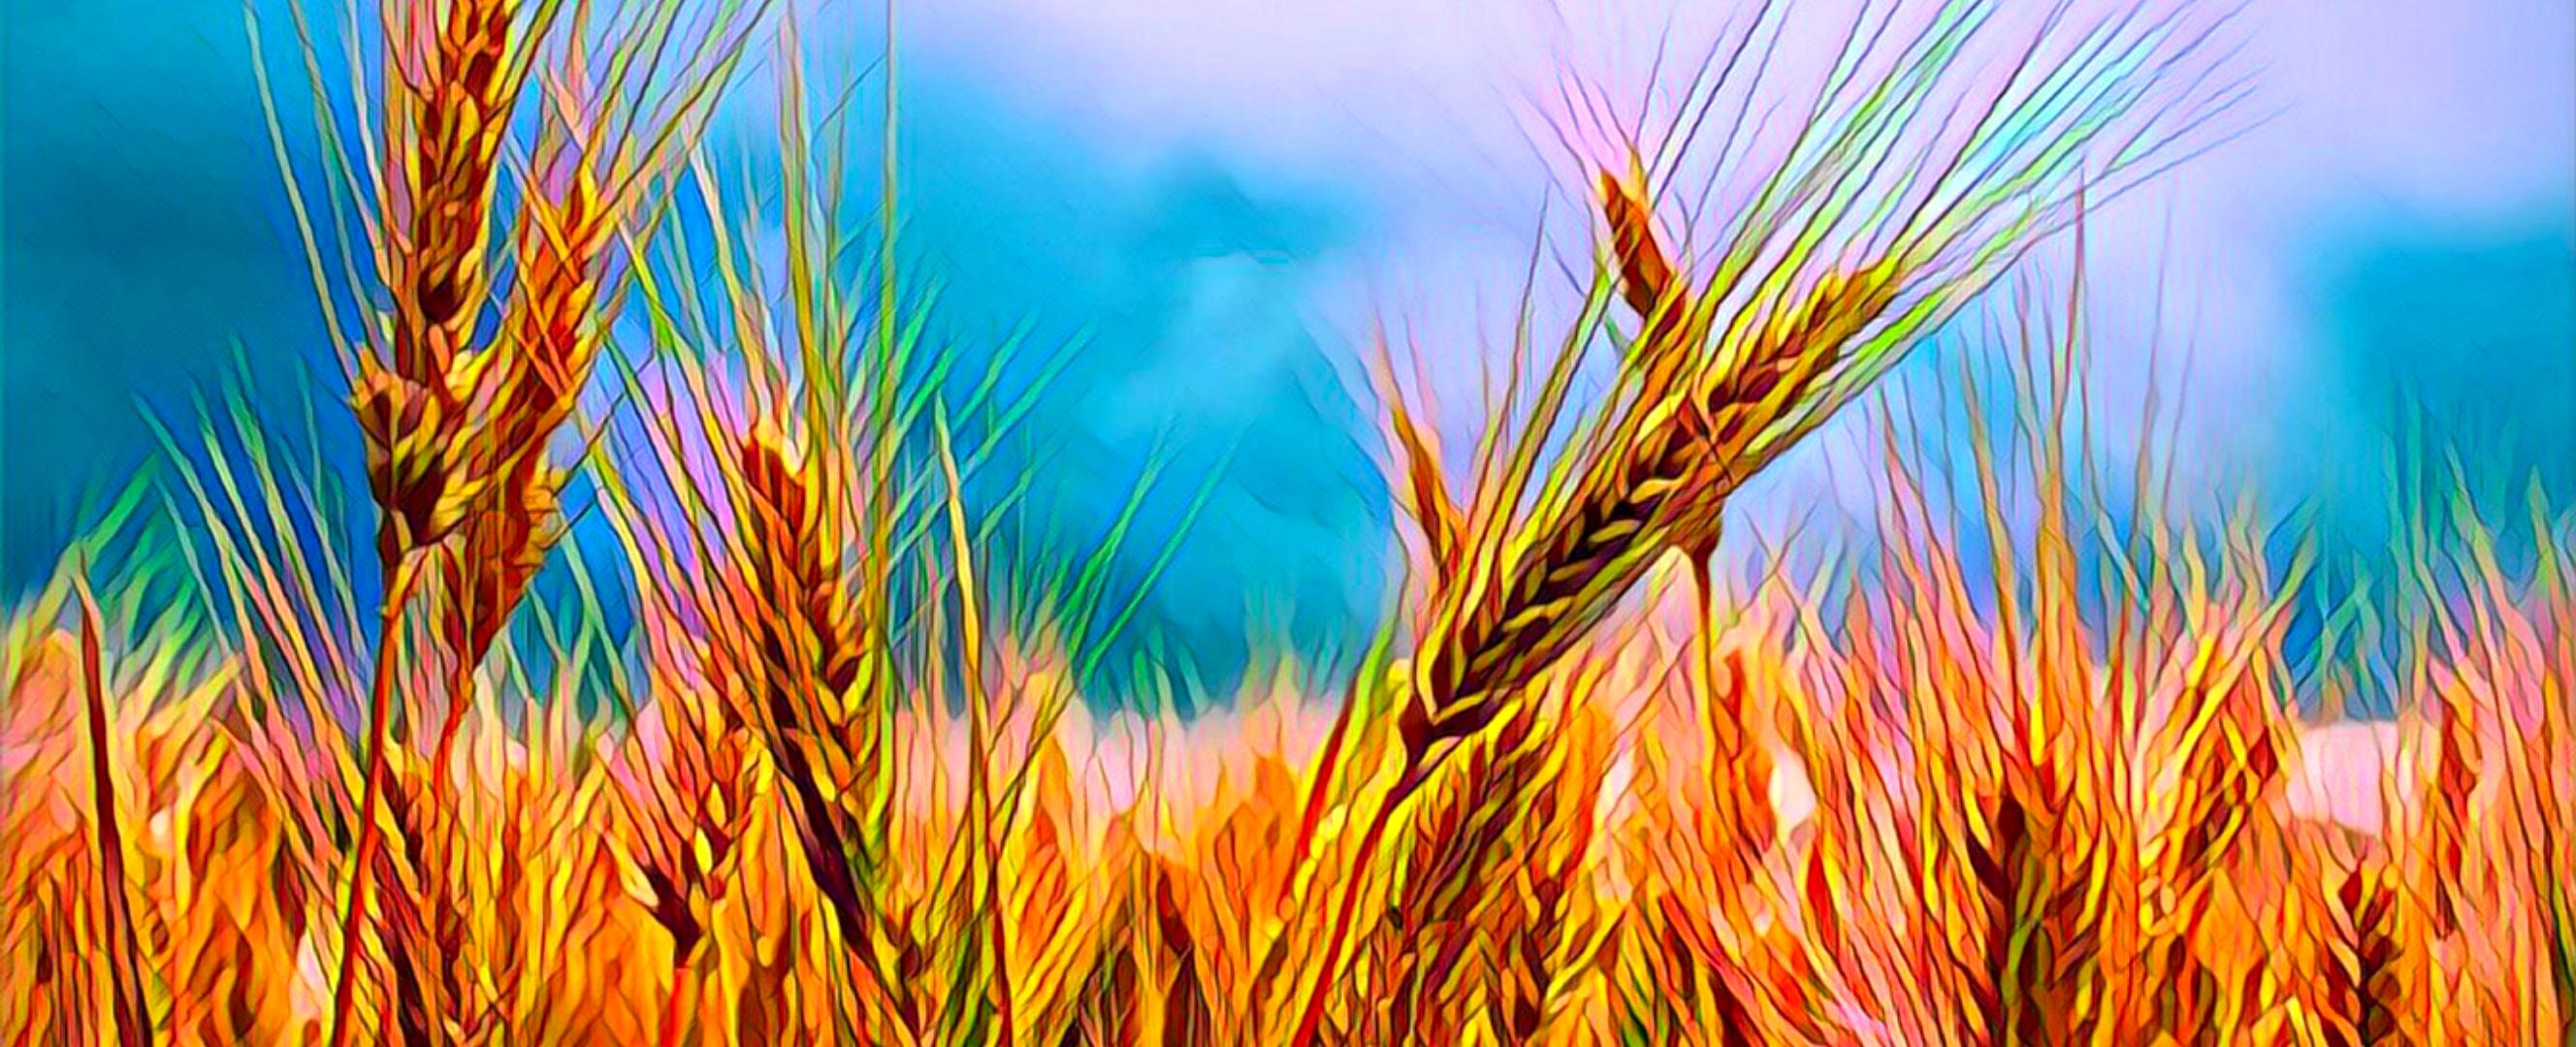 خبر خوش برای گندمکاران و کشاورزان | ابلاغیه افزایش قیمت گندم صادر شد؟